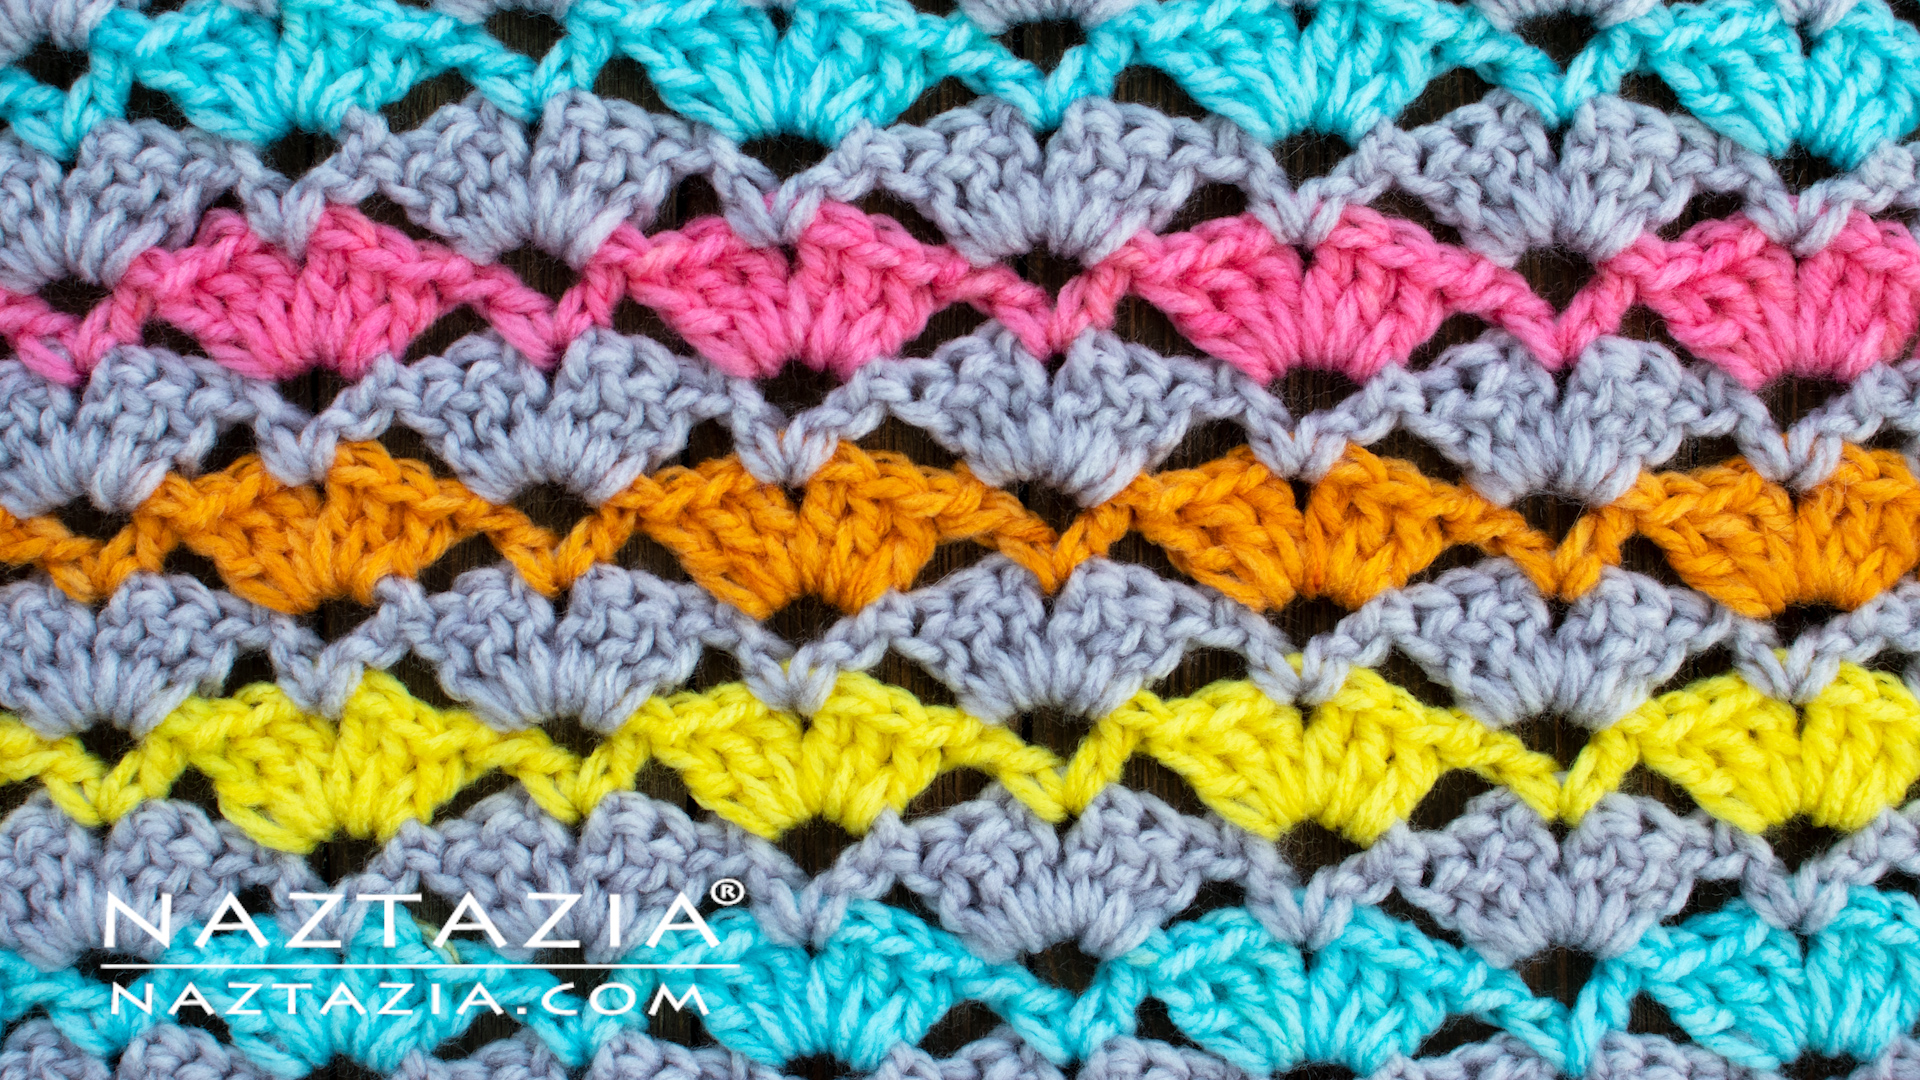 https://naztazia.com/wp-content/uploads/crochet-open-shell-stitch.jpg